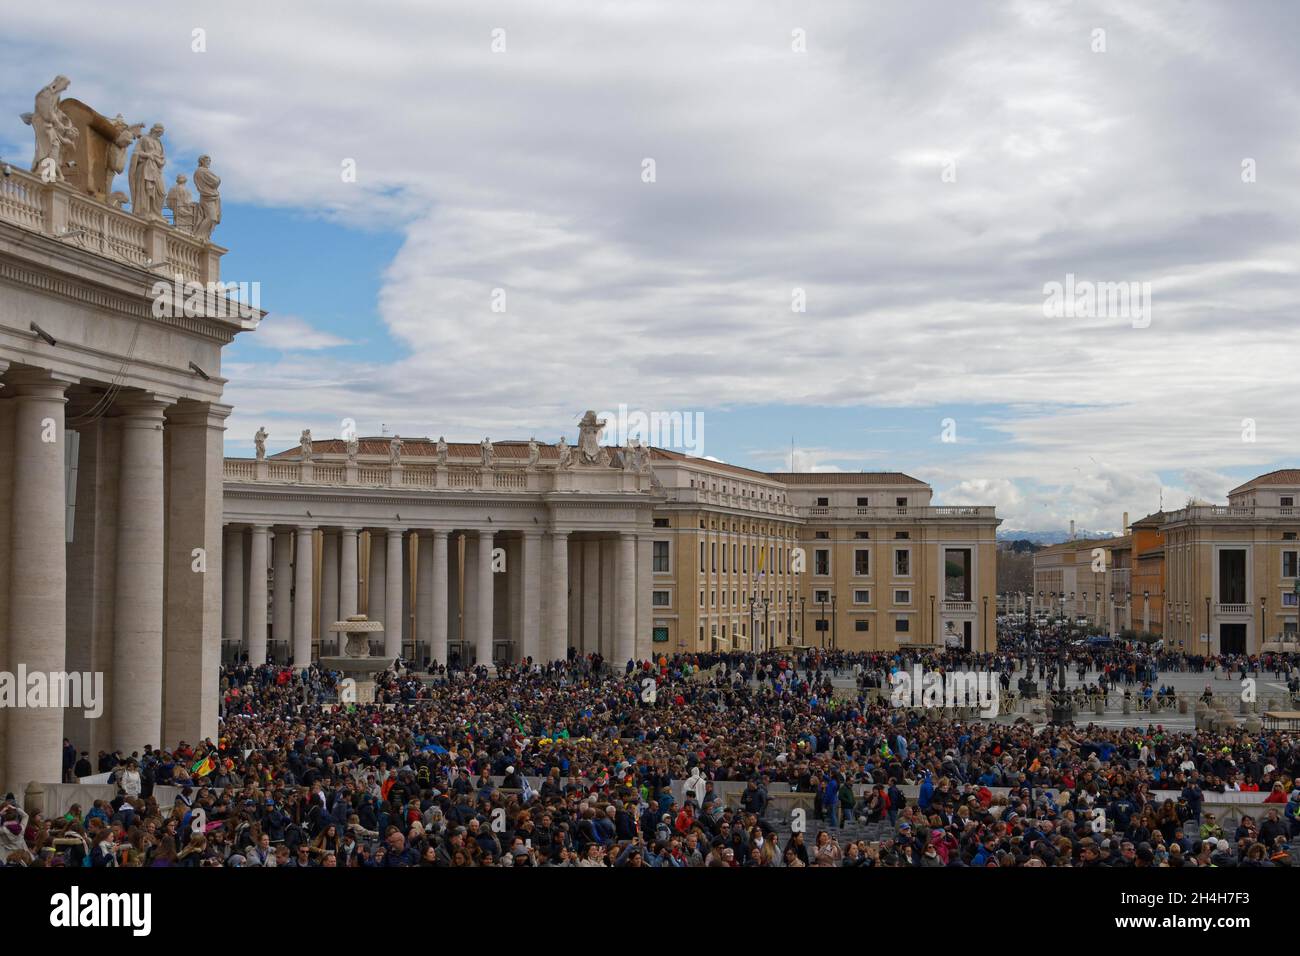 Place Saint-Pierre pendant l'audience papale, Vatican, Rome, Italie Banque D'Images